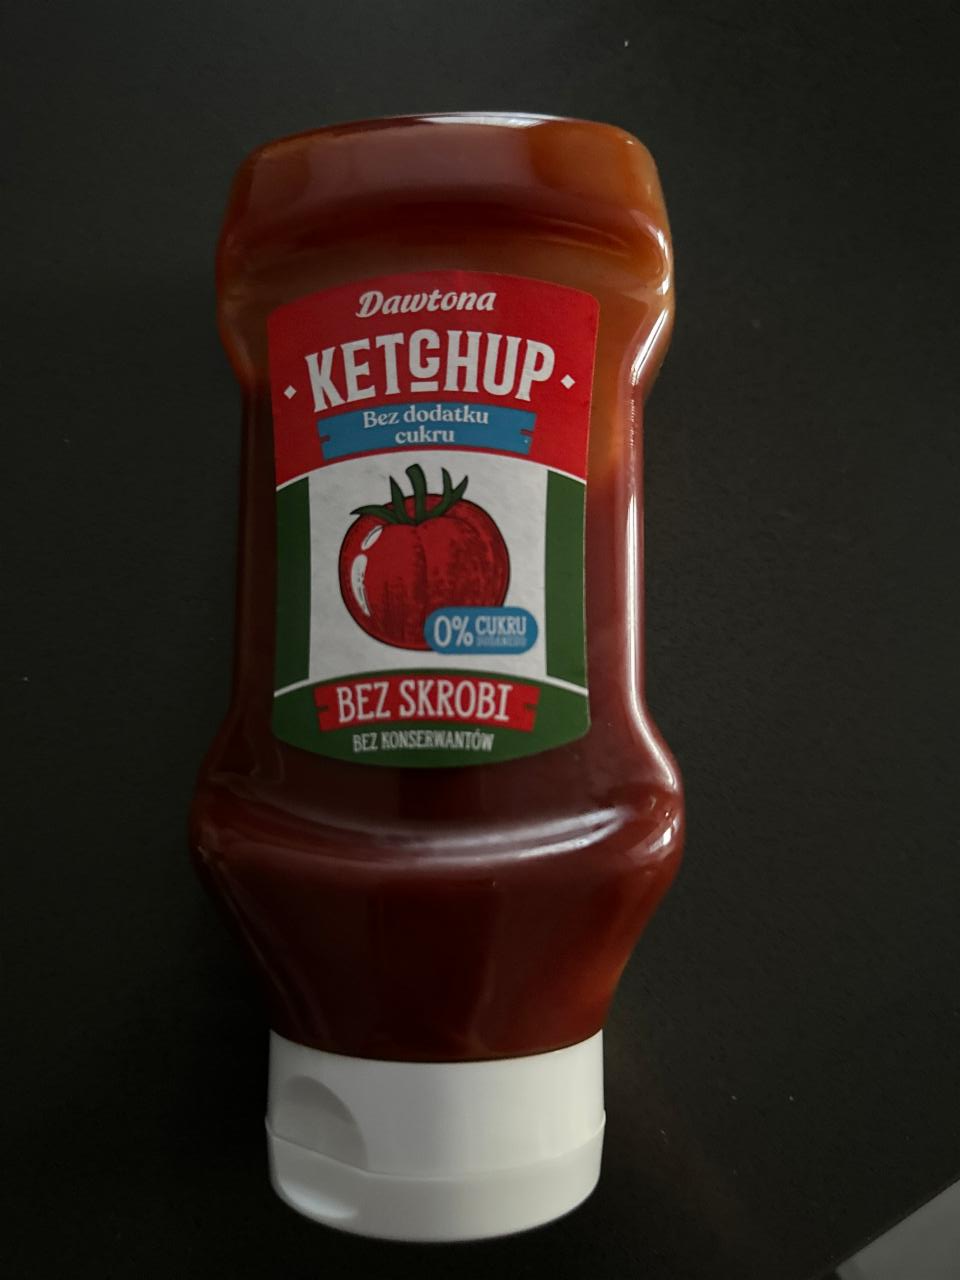 Фото - Кетчуп Ketchup bez dodatku cukru Dawtona